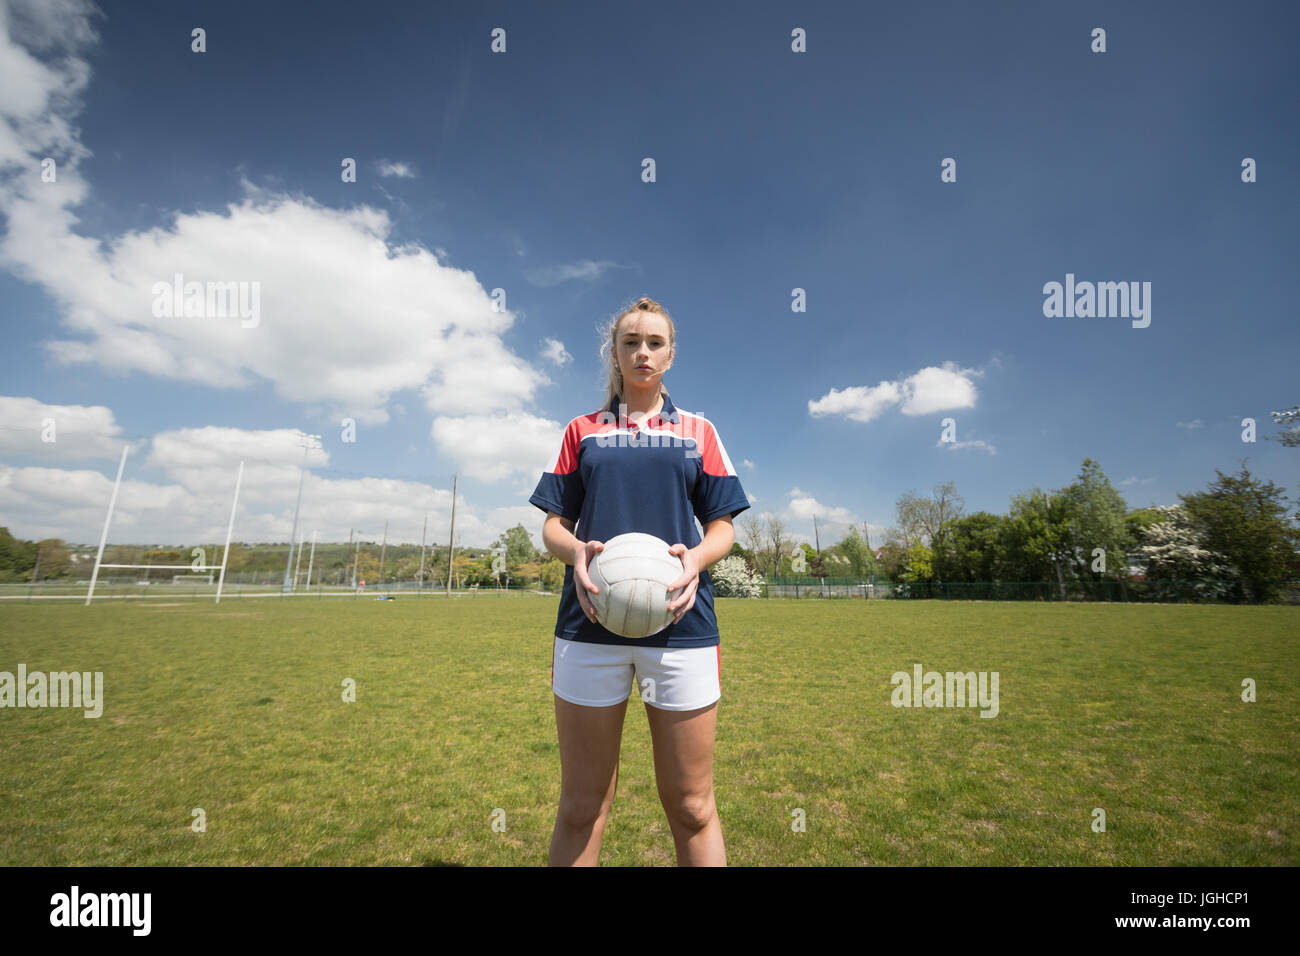 Female player holding soccer ball sur le terrain de jeu contre le ciel Banque D'Images